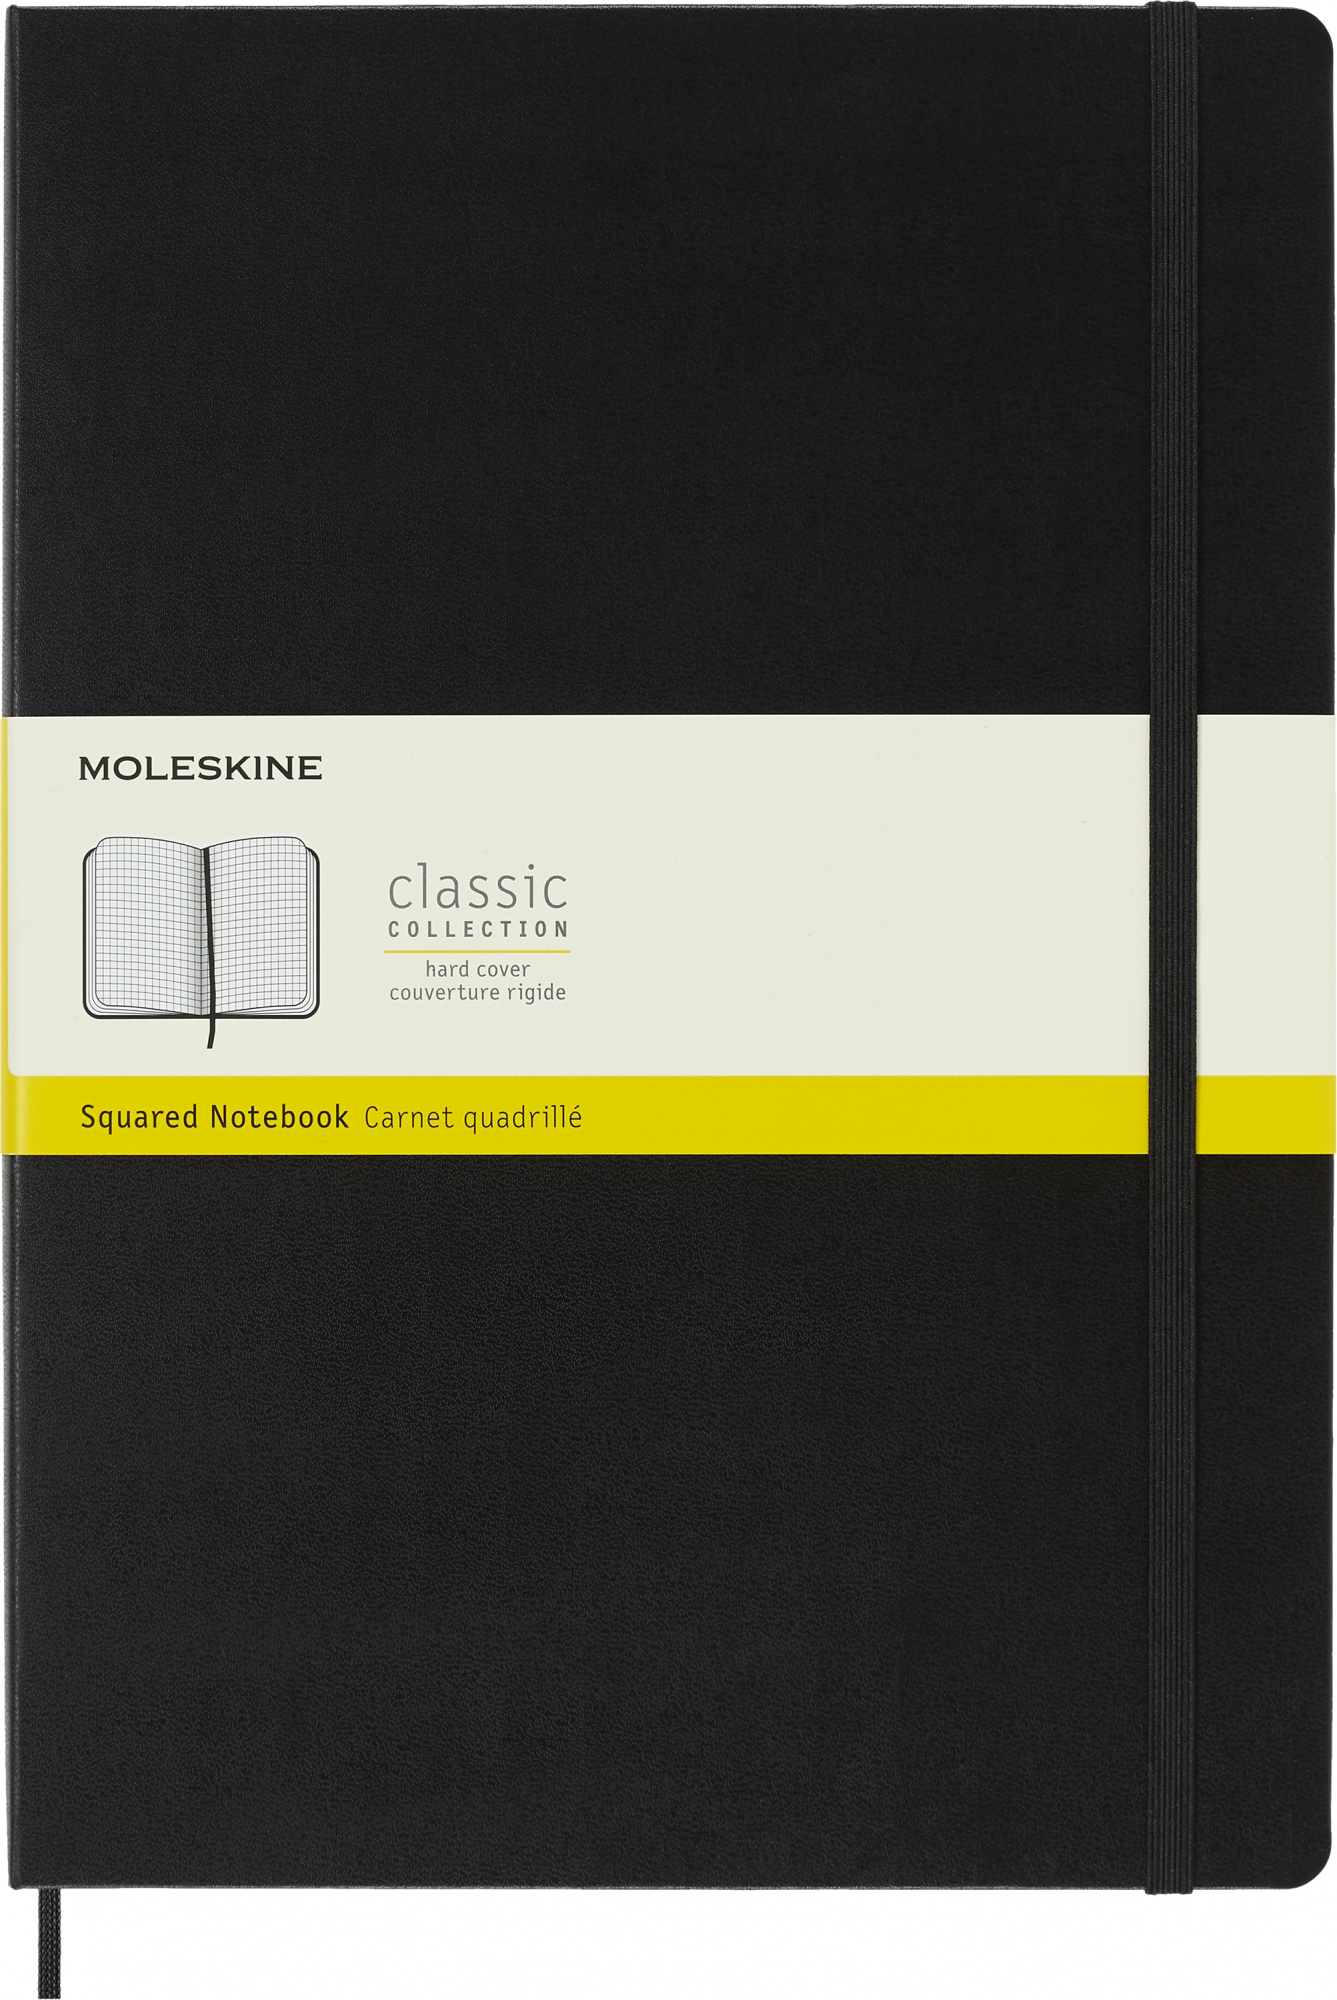 Блокнот Moleskine CLASSIC QP111 A4 192стр. клетка твердая обложка черный